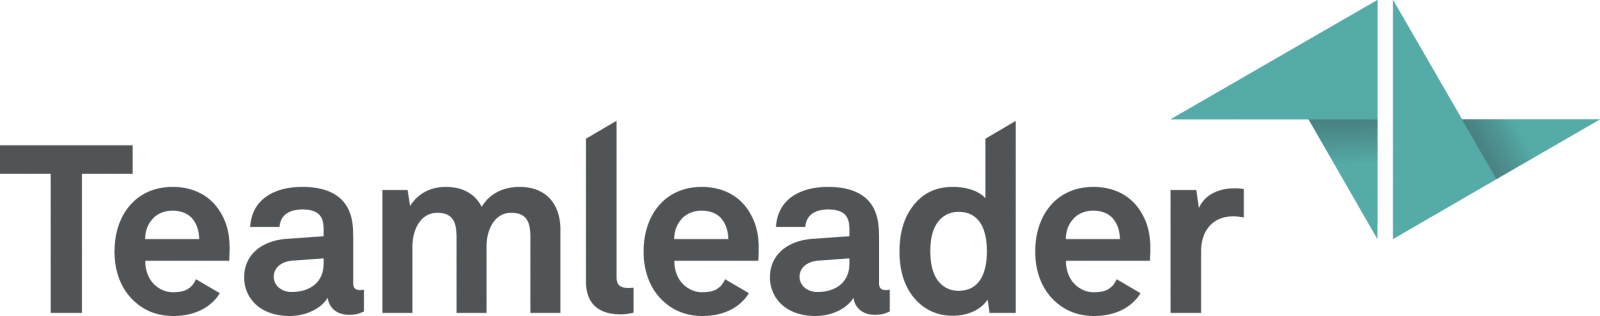 Teamleader Logo